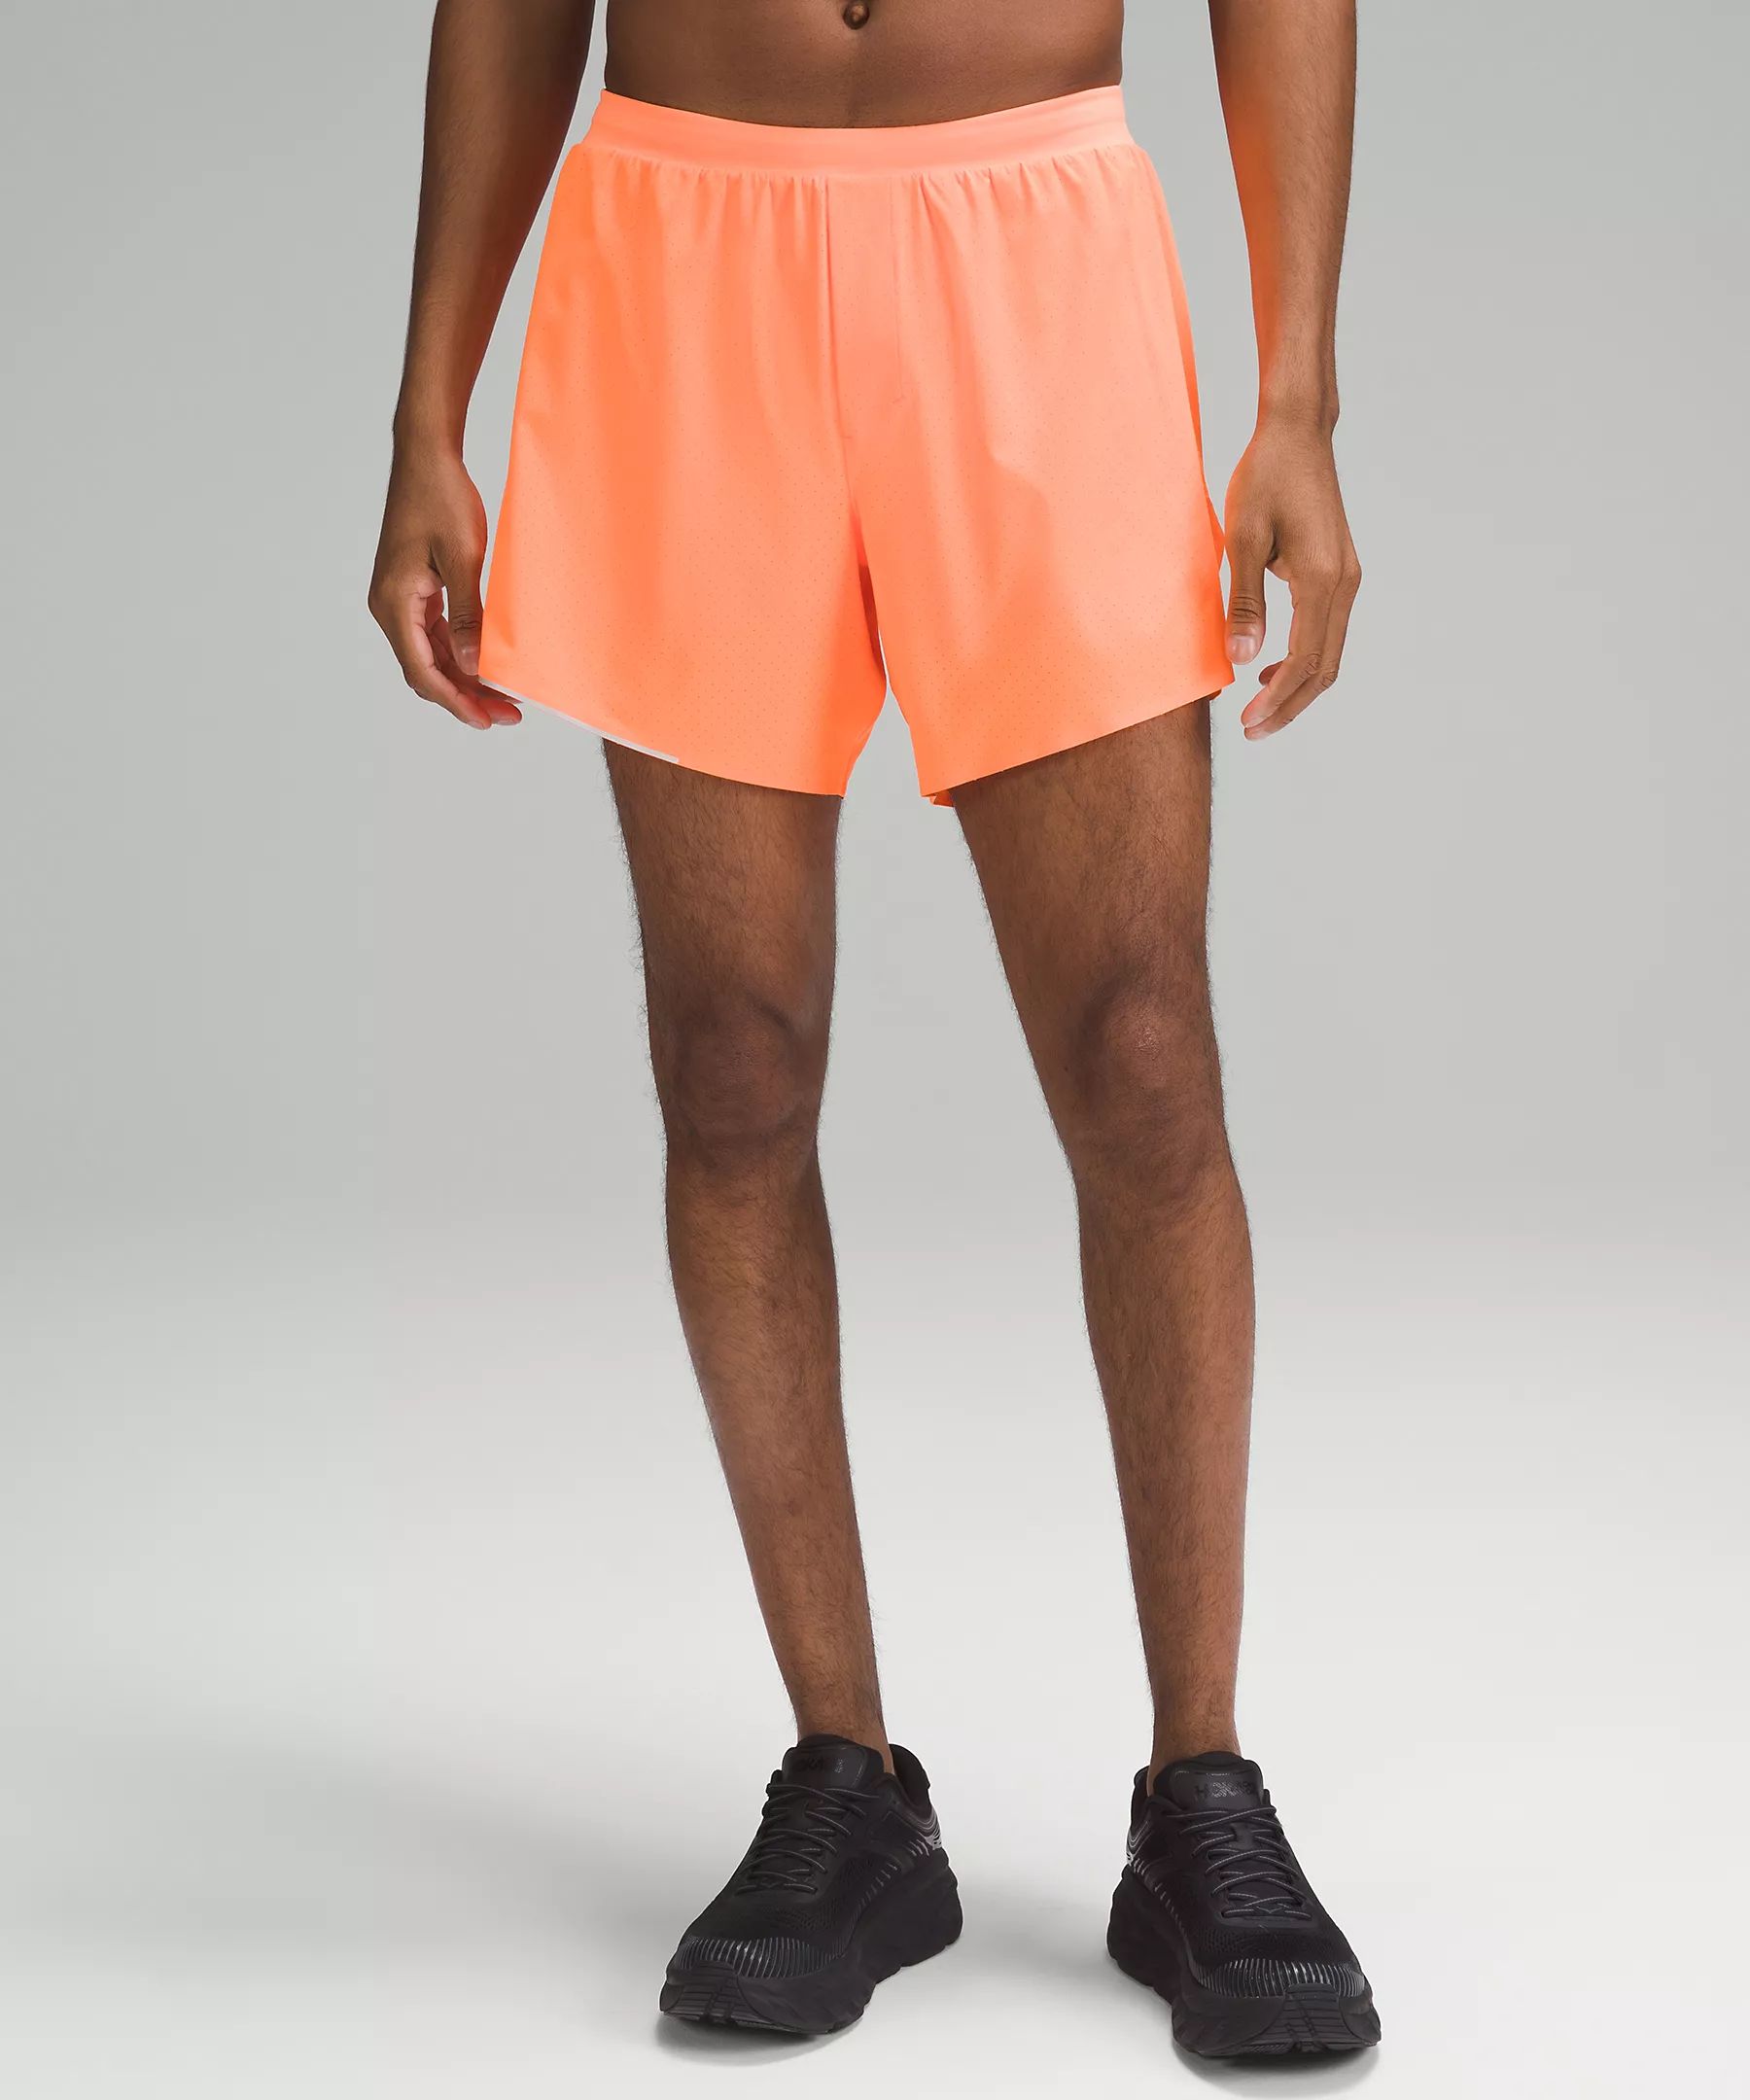 Fast and Free Lined Short 6" | Men's Shorts | lululemon | Lululemon (US)